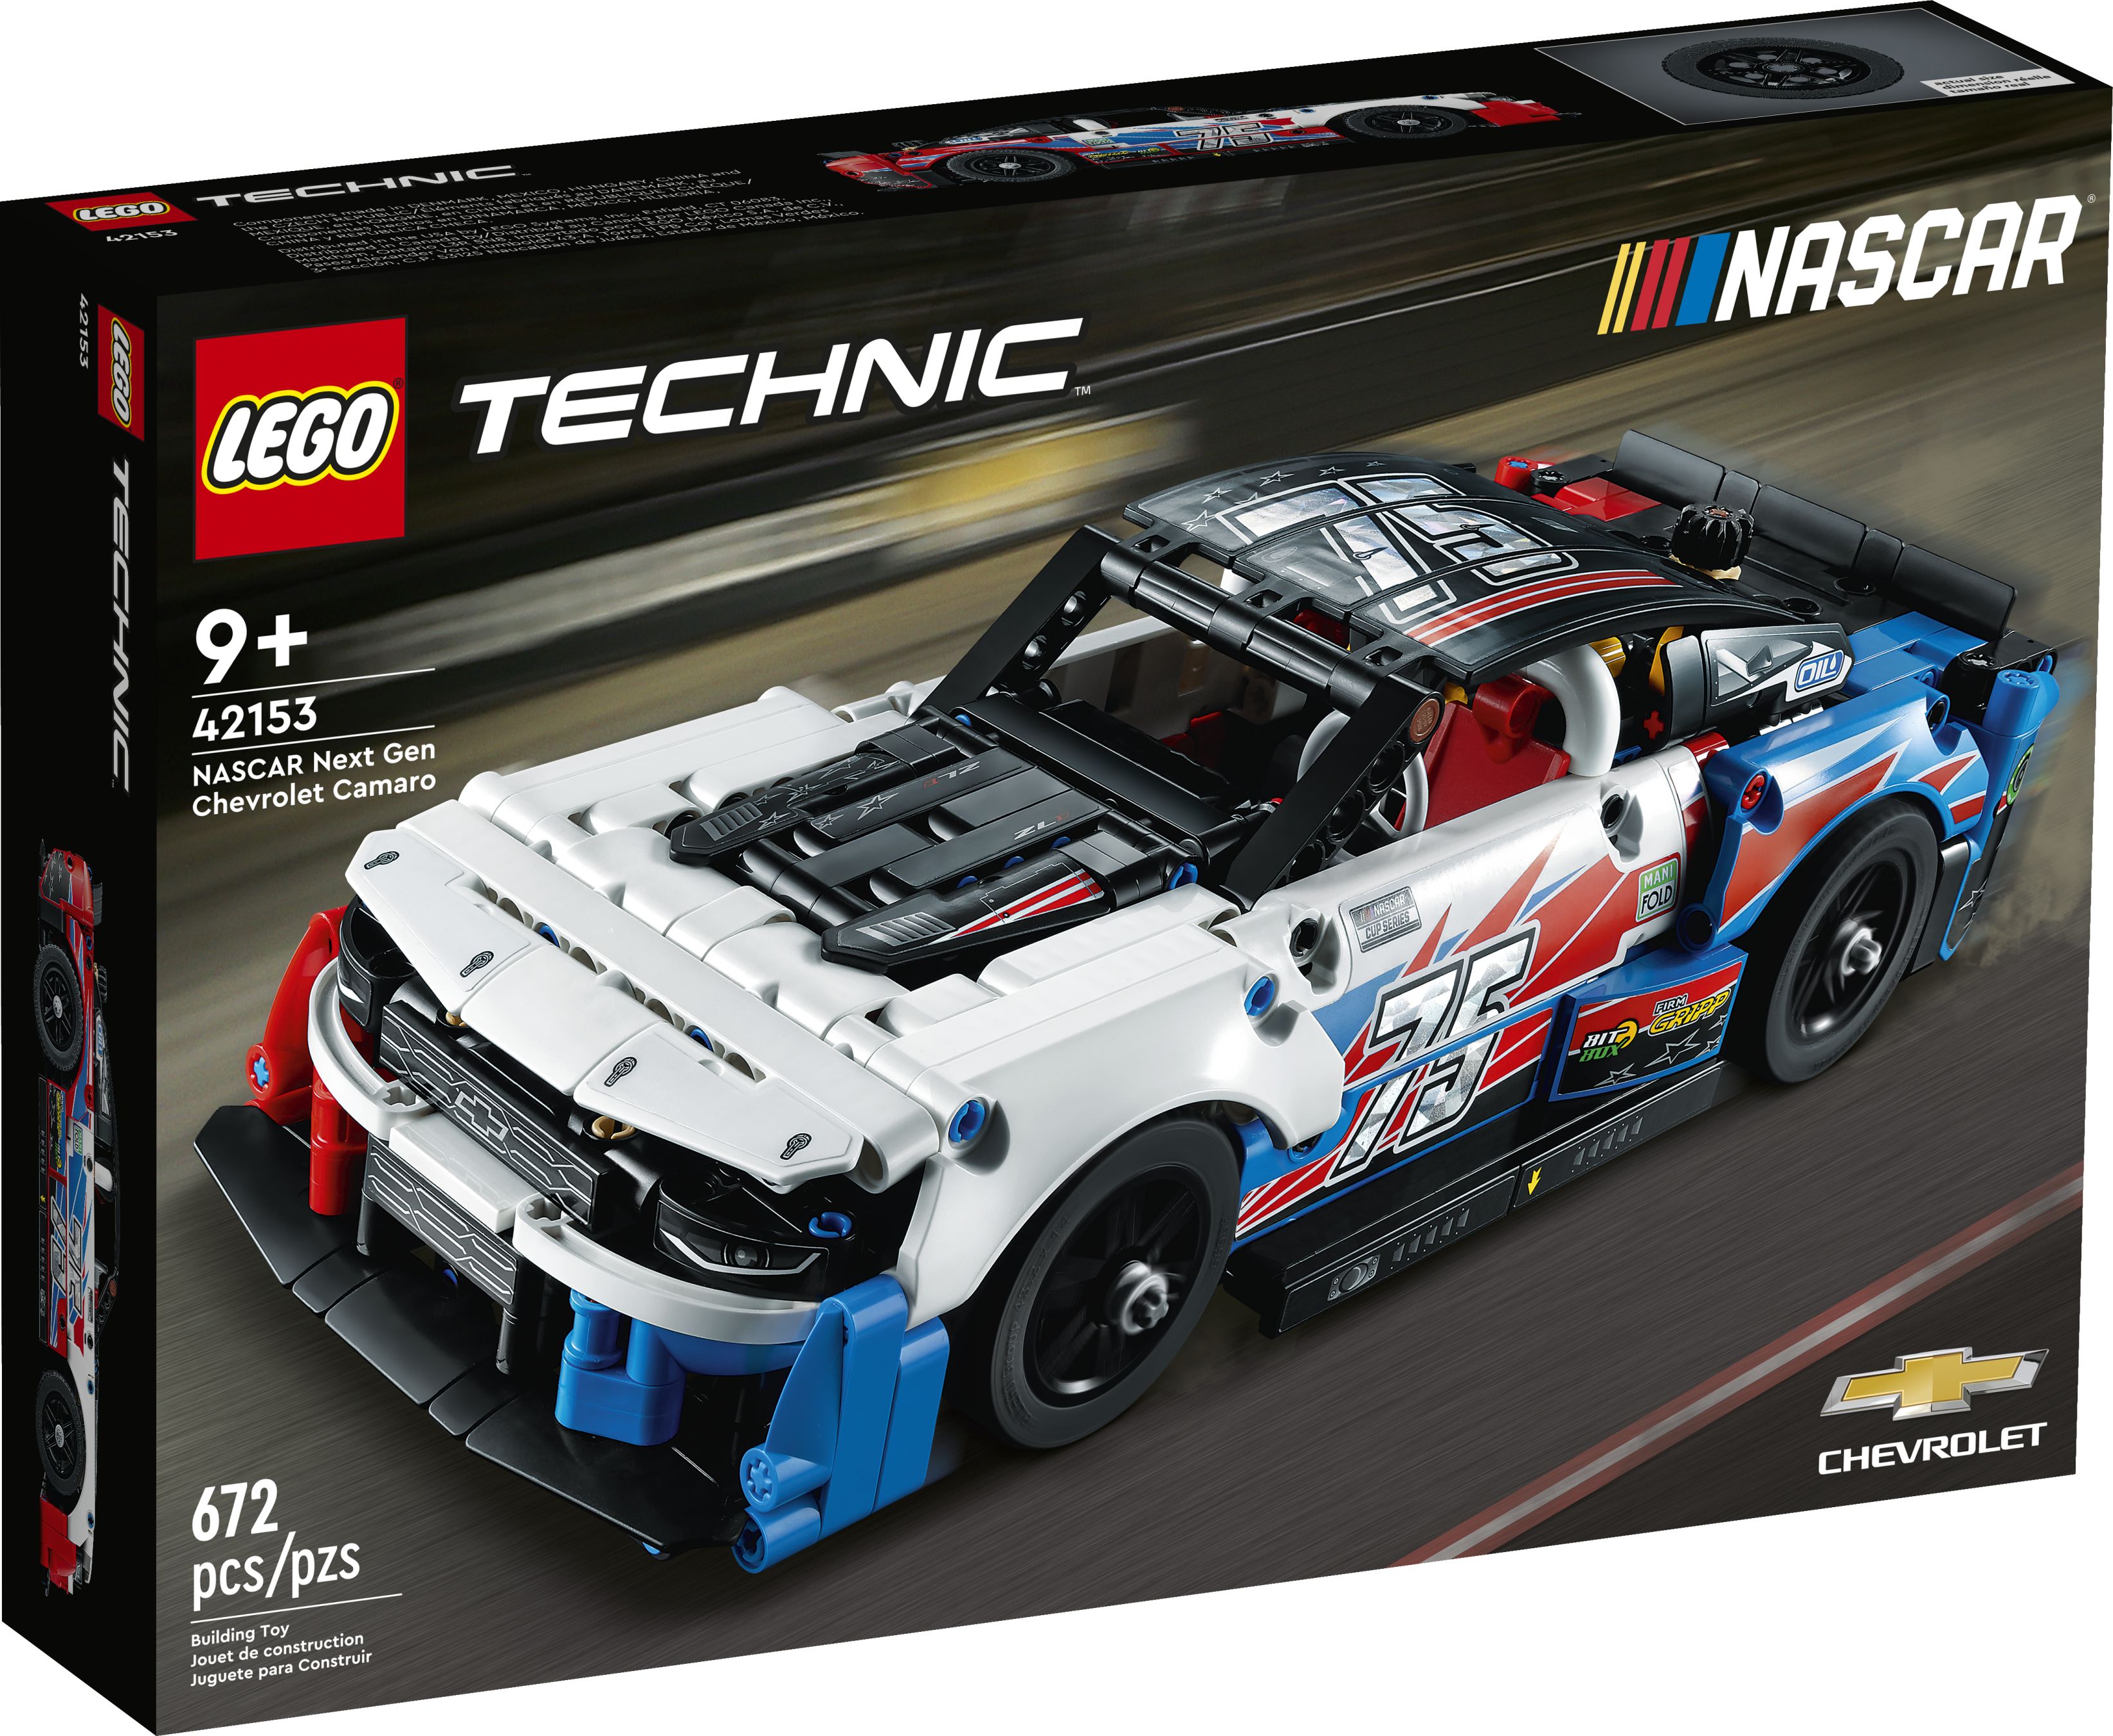 LEGO Technic 42153 NASCAR Next Gen Chevrolet Camaro ZL1 LEGO_42153_Box1_v39.jpg